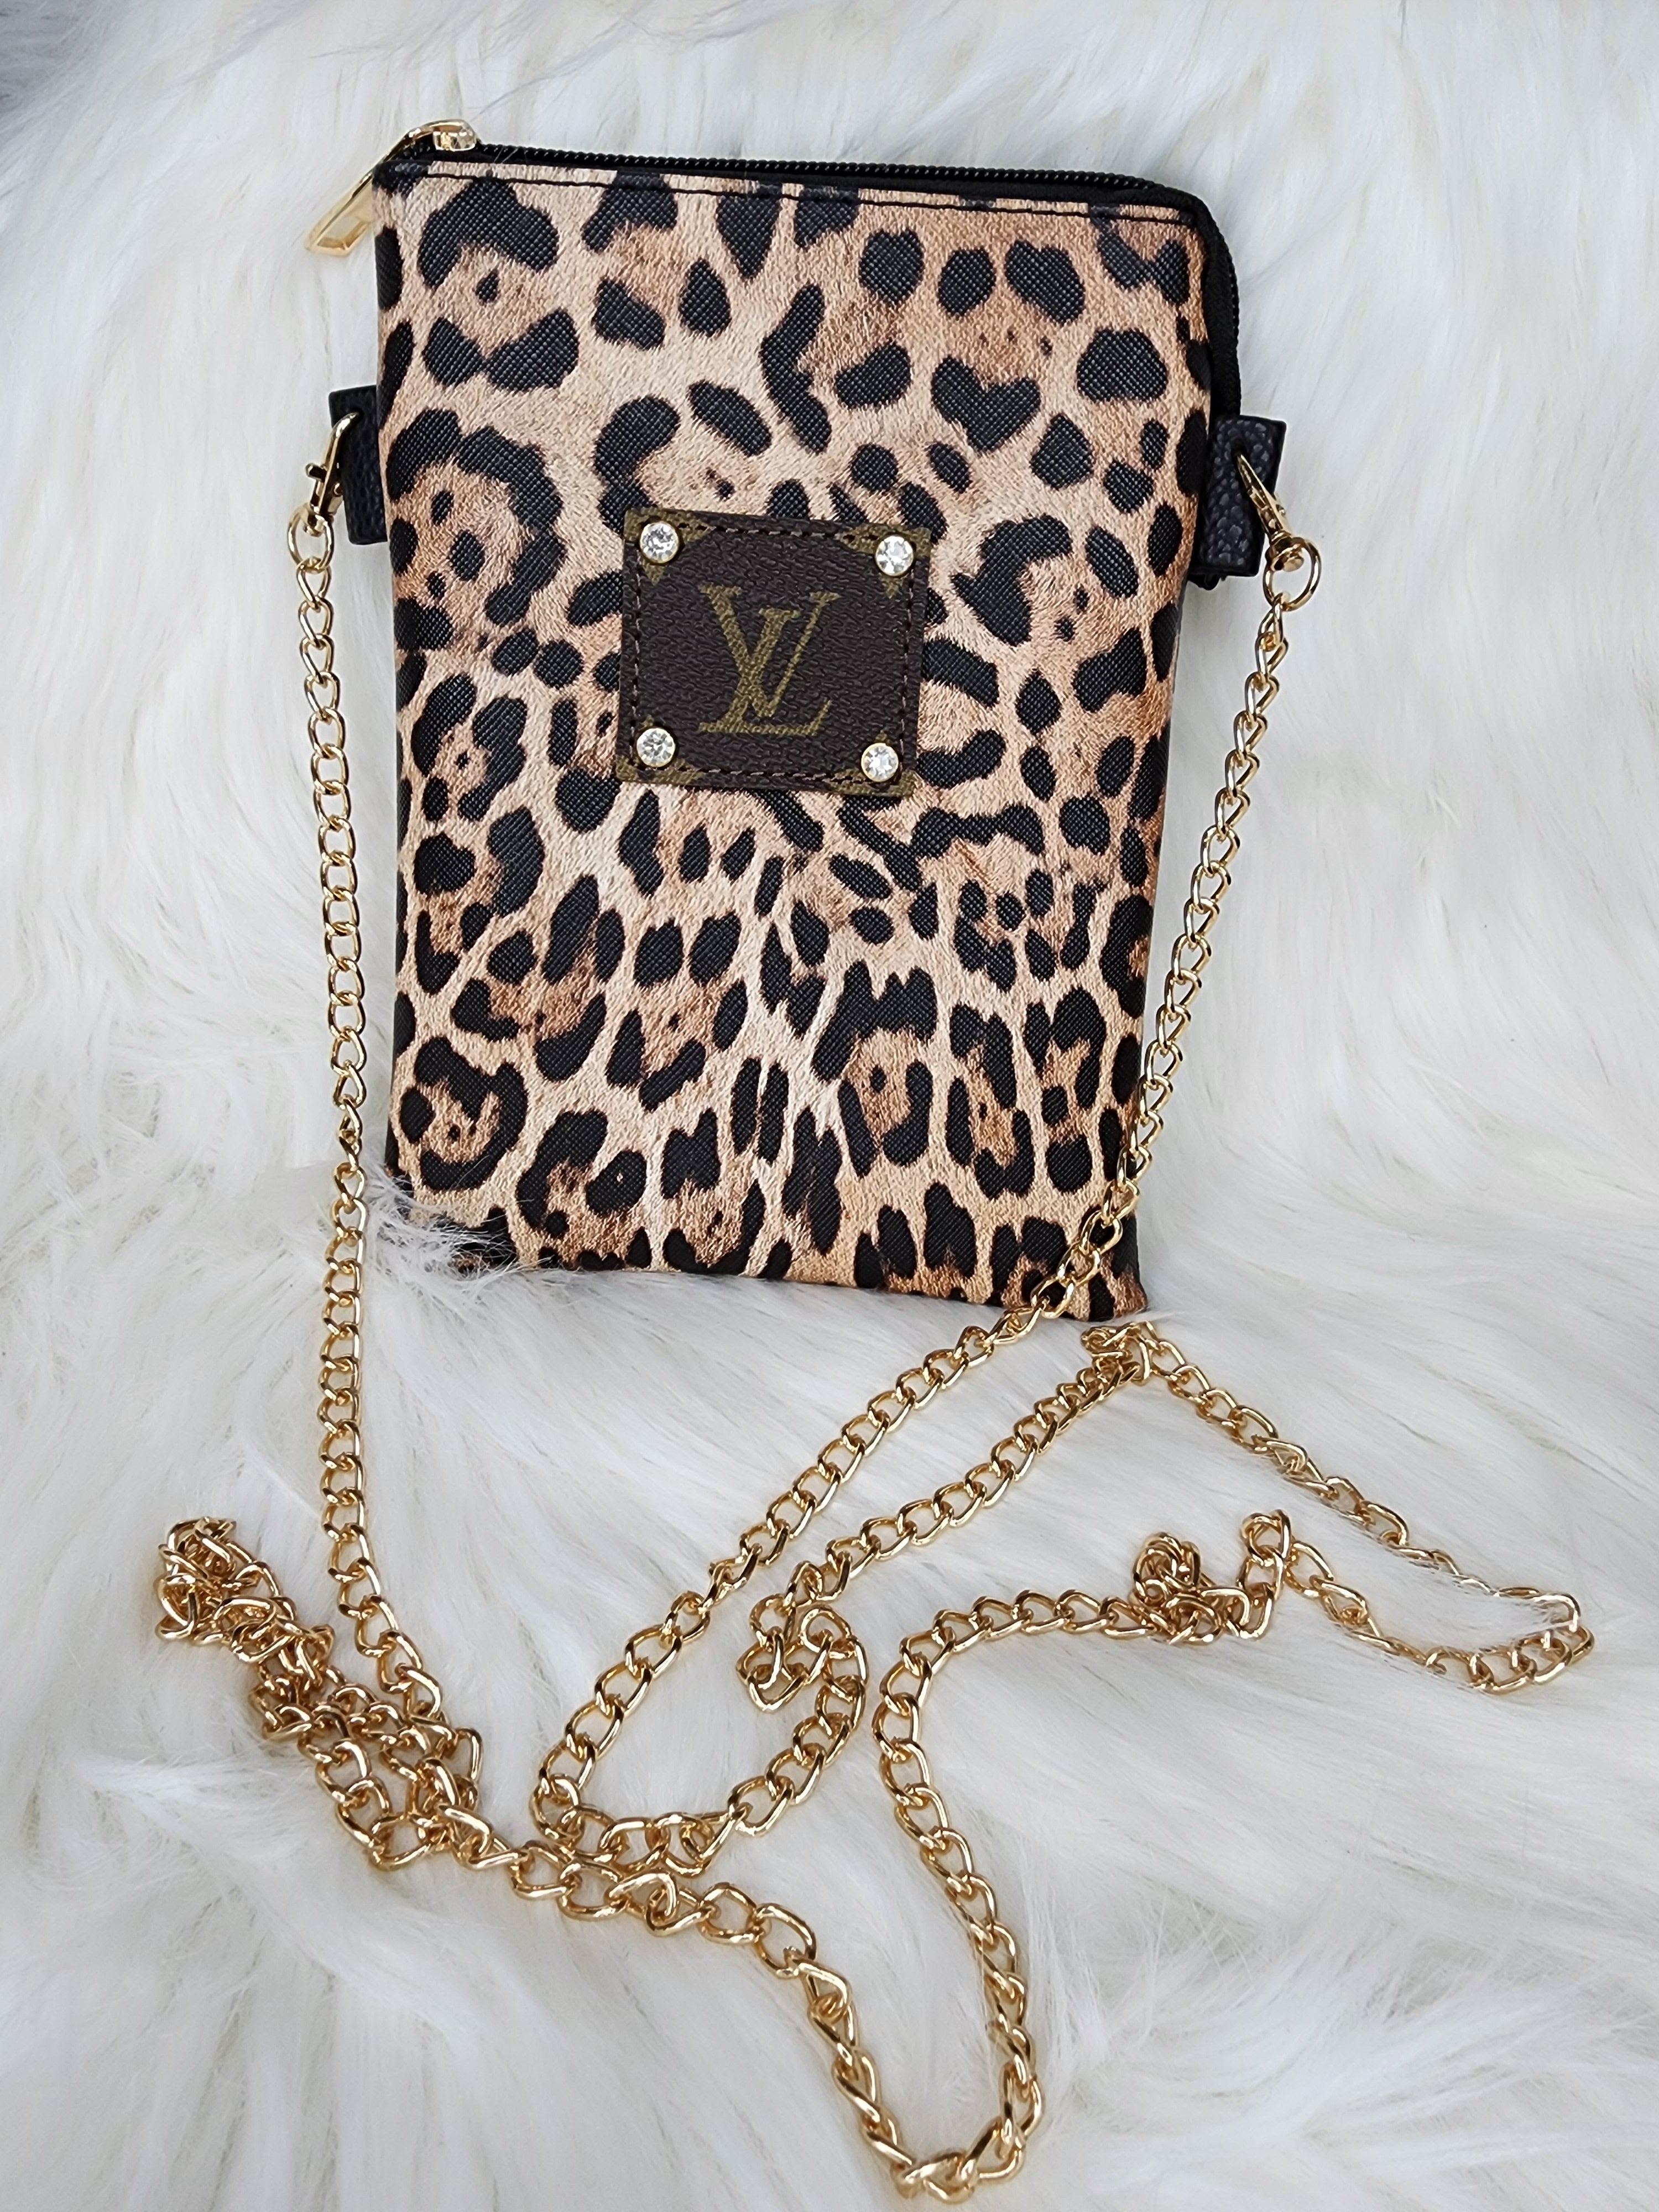 coffe and leopard handbags | Leopard print bag, Leopard handbag, Leopard  print handbags